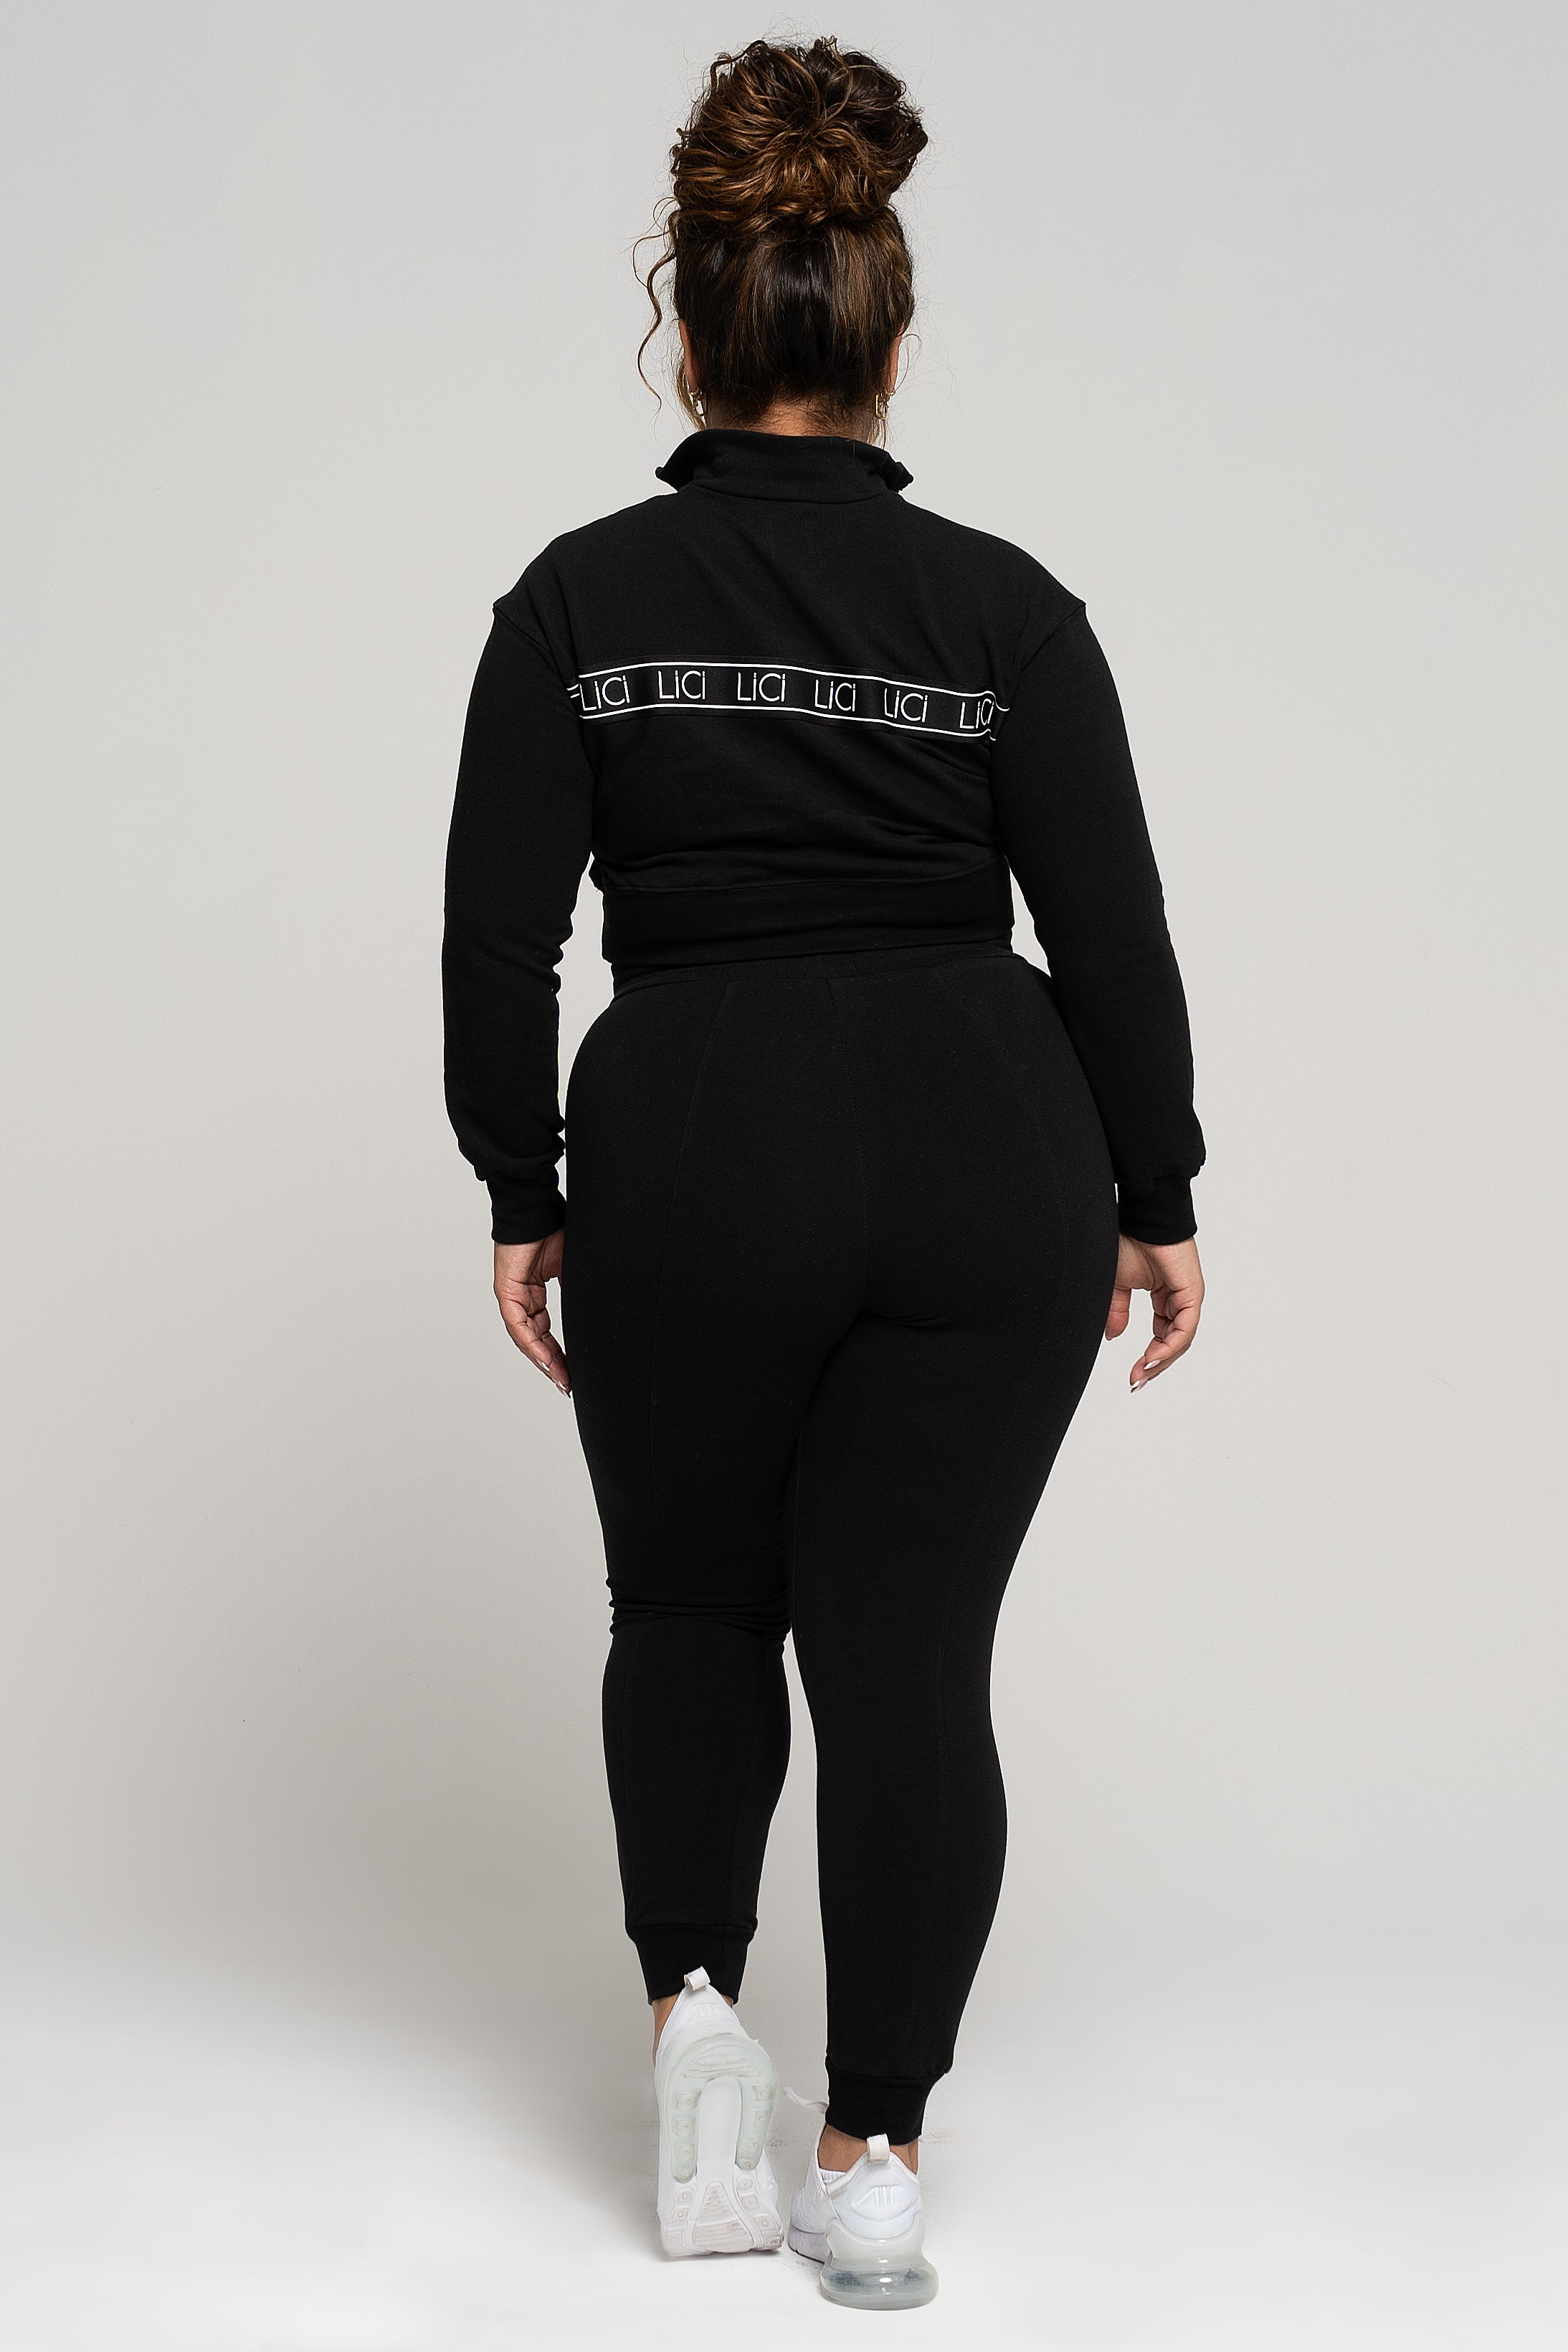 LiCi Fit Black Fitted Sweatpants & Black Fleece Quarter-Zip Sweatshirt 